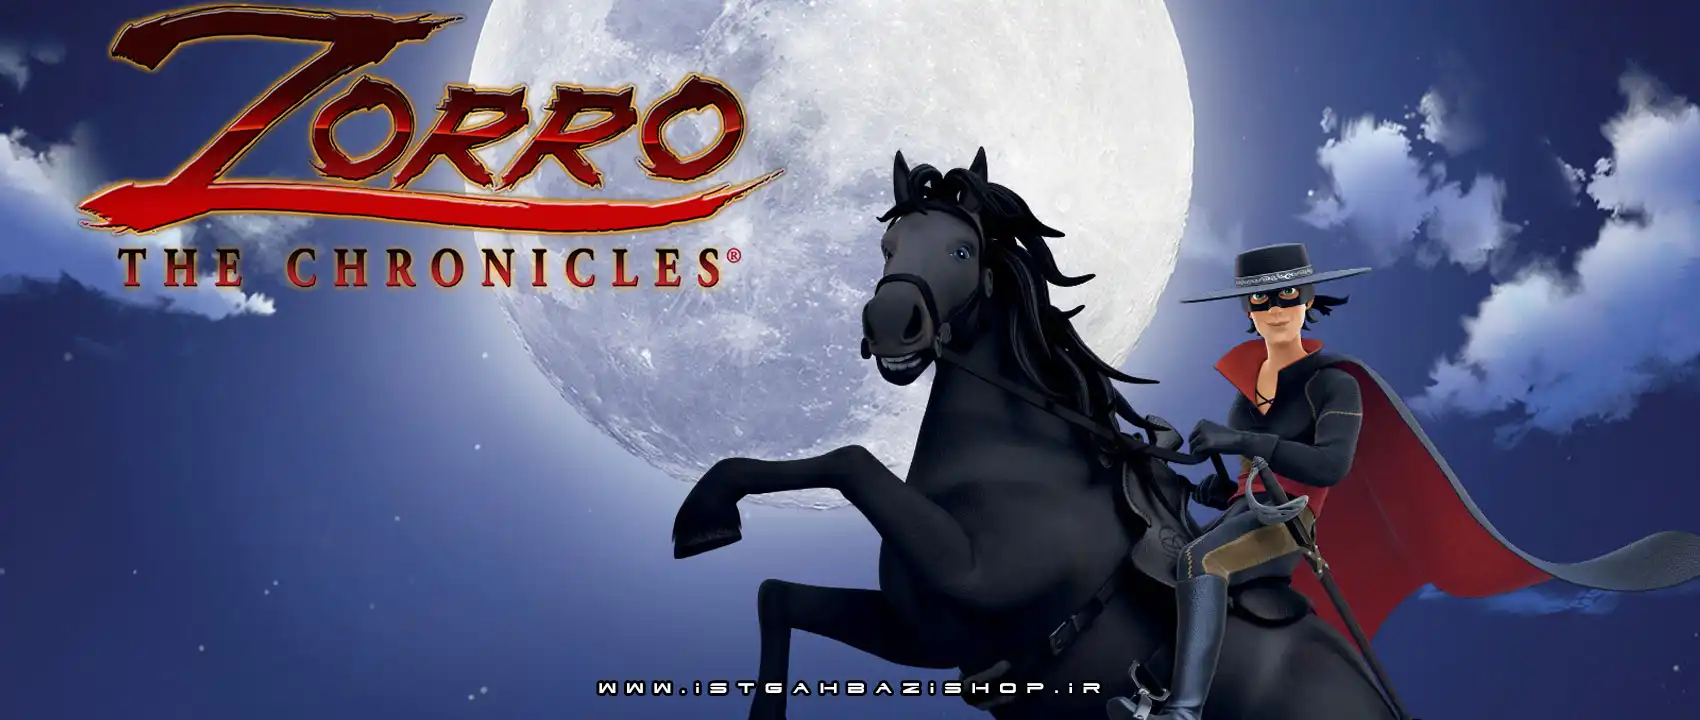 بازی Zorro The Chronicles برای PS4